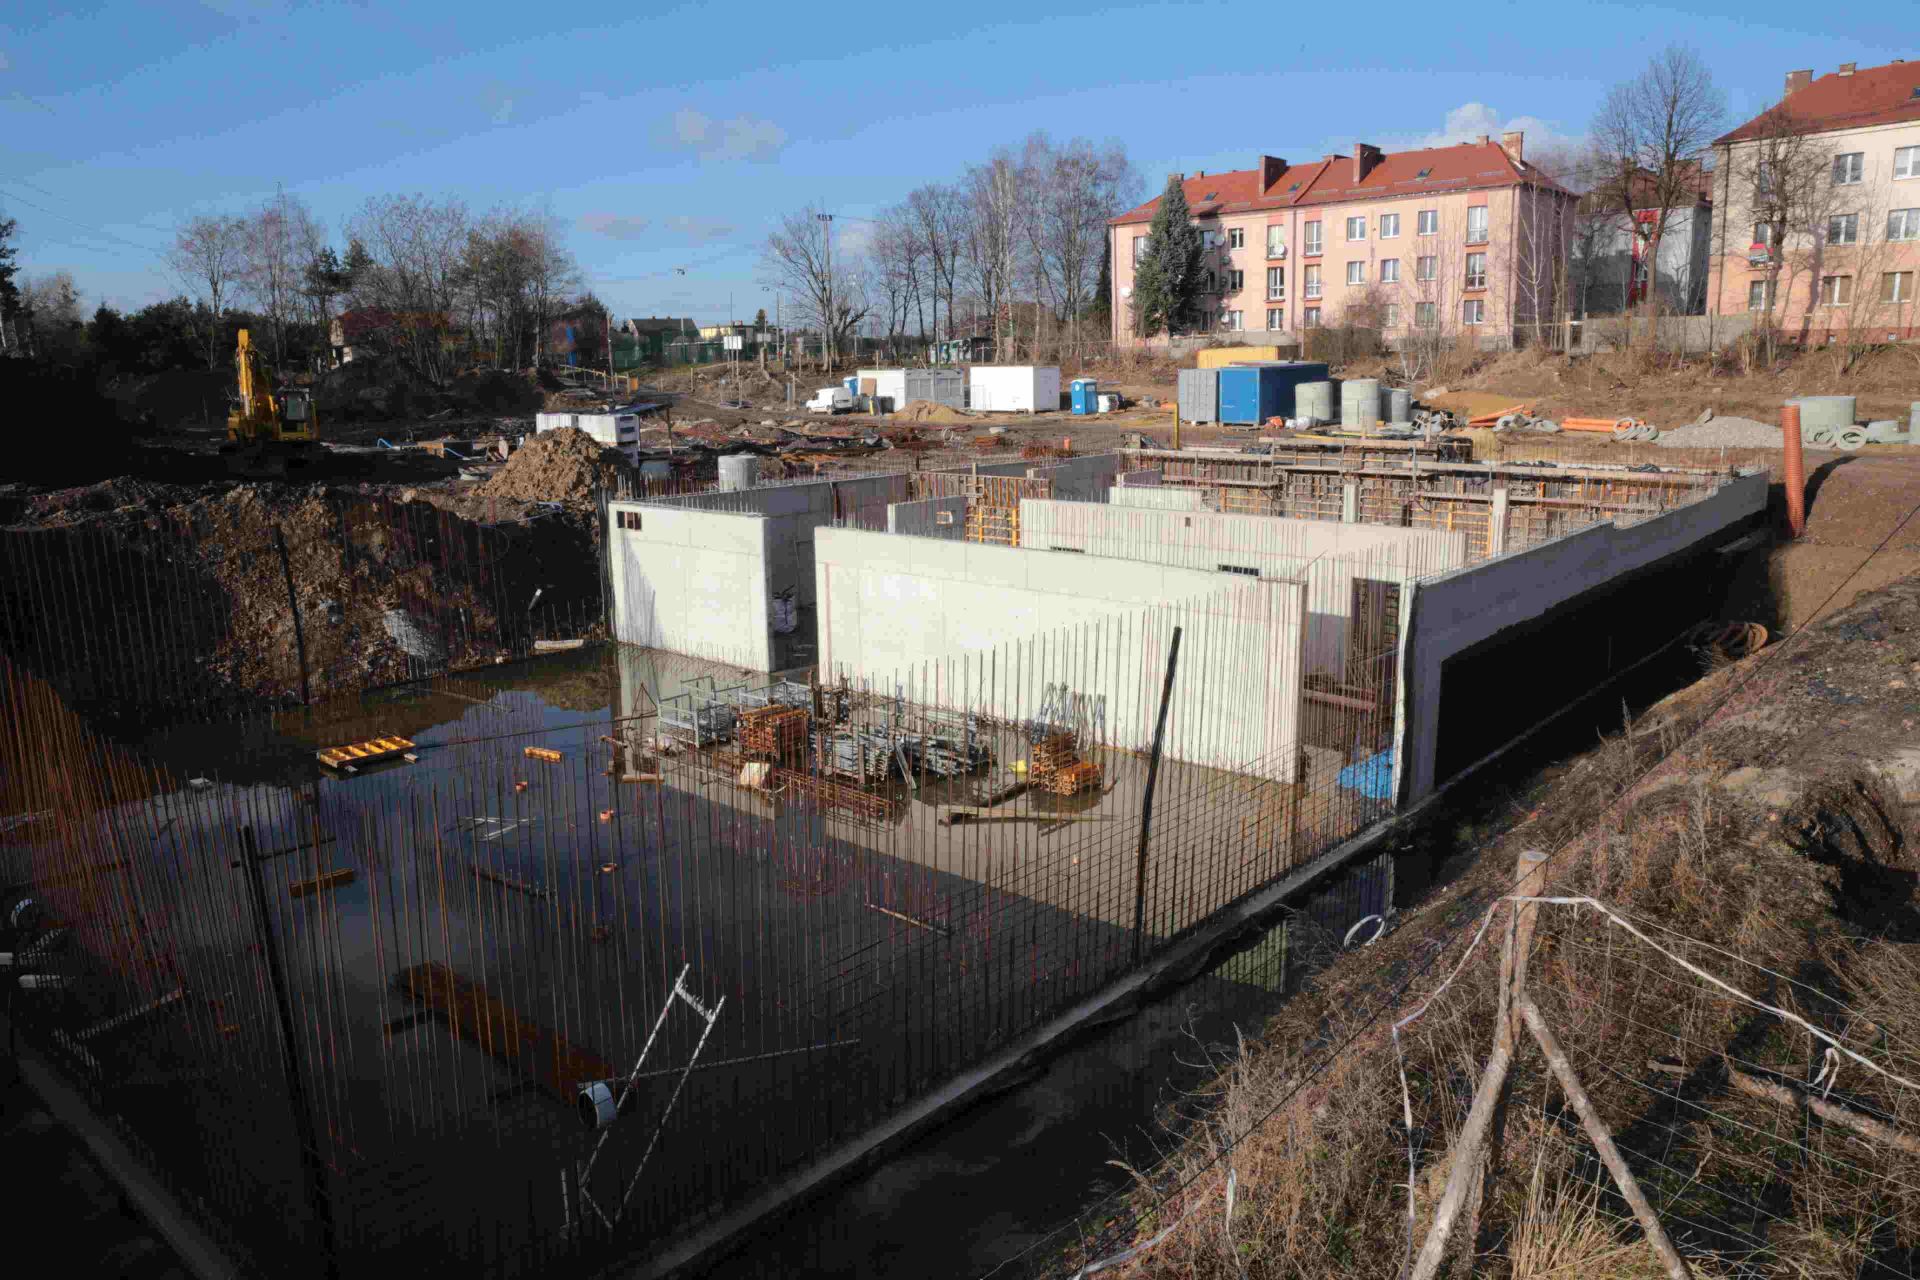 Tak wyglądał plac budowy hospicjum w styczniu tego roku, gdy urząd miasta odstąpił od umowy z firmą, która rozpoczęła jego budowę. Zdj. Wacław Troszka